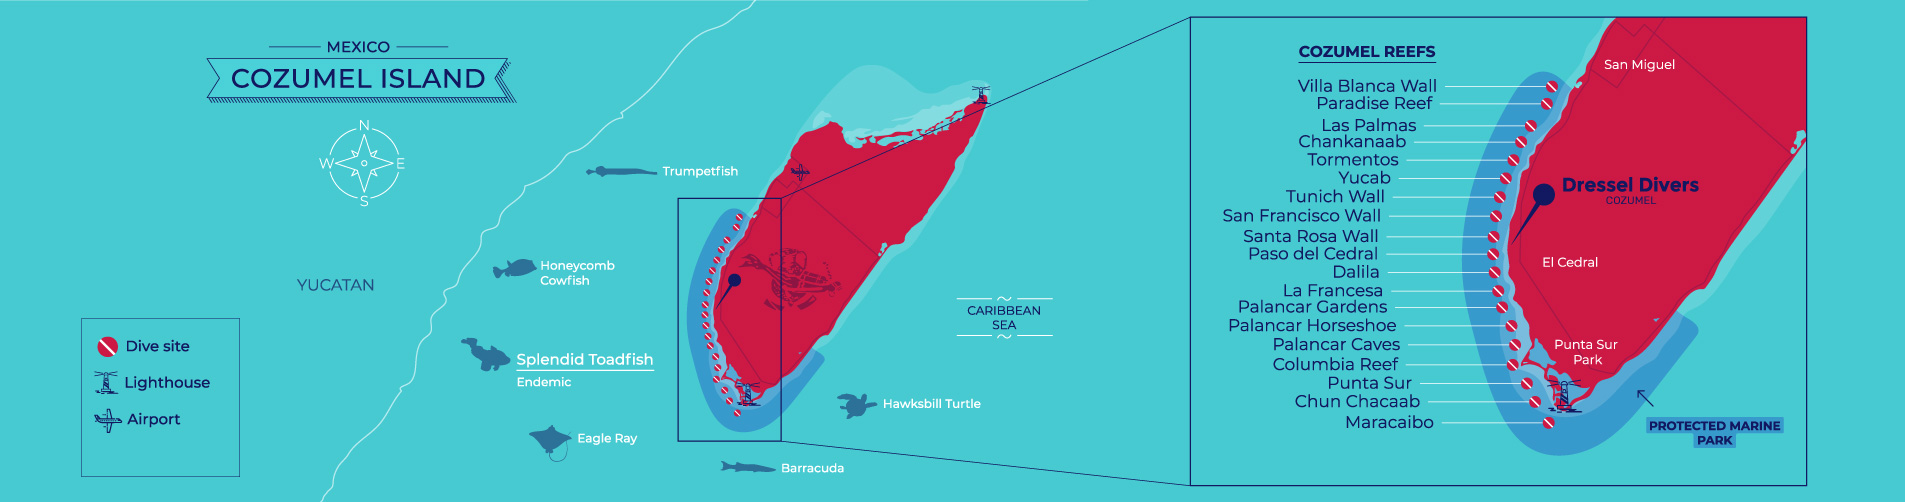 Map of reefs in Cozumel - mapa de arrecifes de Cozumel